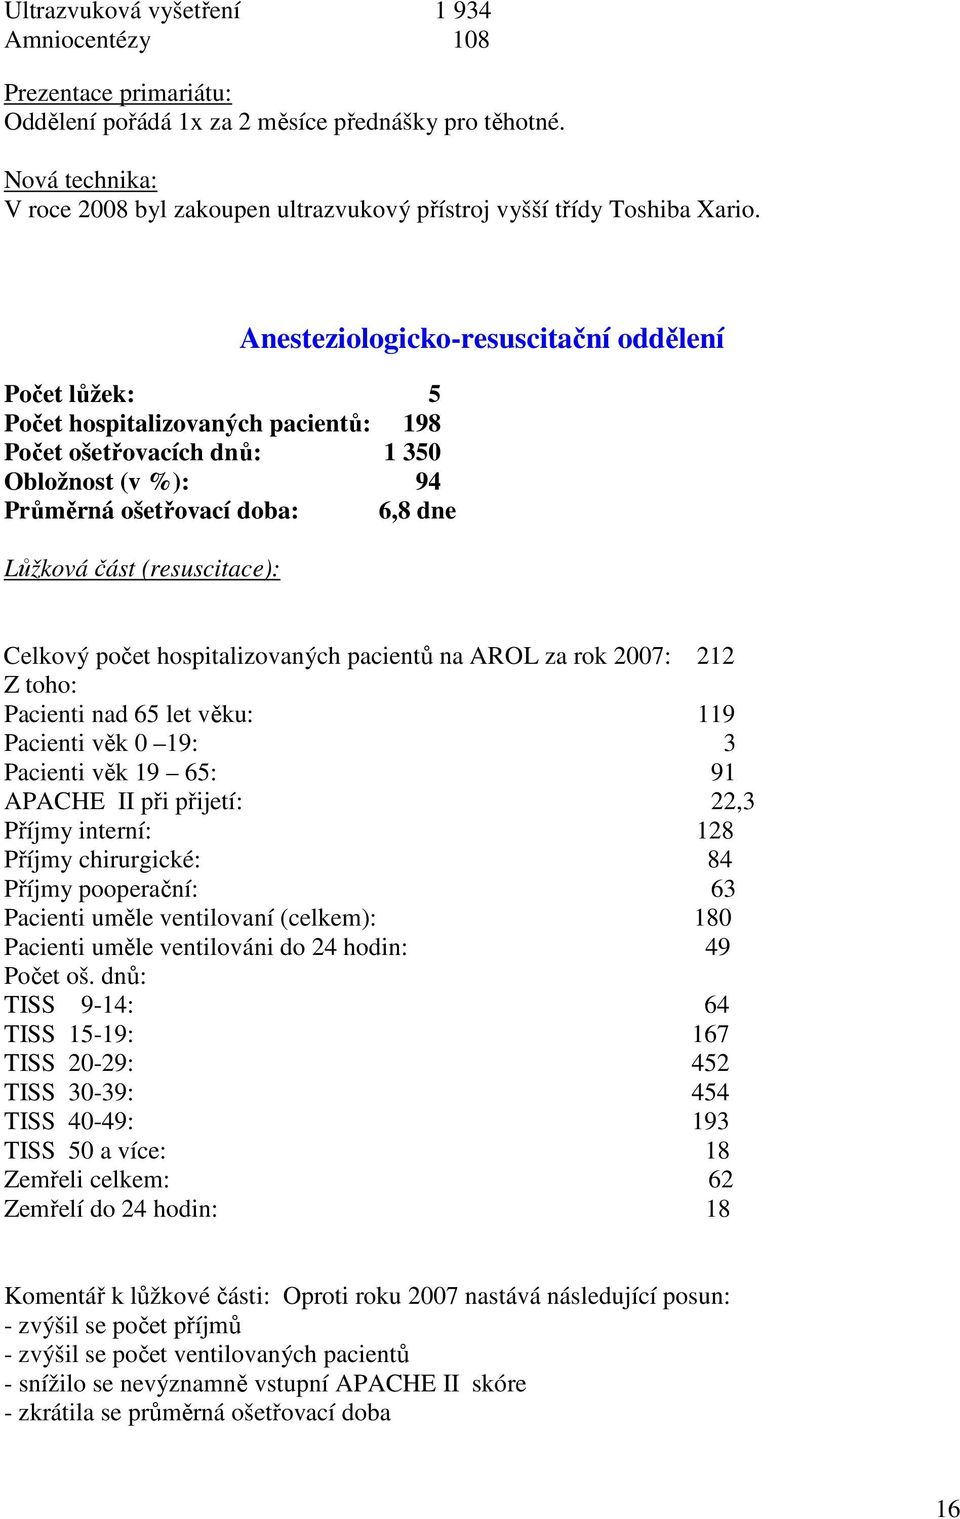 Počet lůžek: 5 Počet hospitalizovaných pacientů: 198 Počet ošetřovacích dnů: 1 350 Obložnost (v %): 94 Průměrná ošetřovací doba: 6,8 dne Lůžková část (resuscitace): Anesteziologicko-resuscitační